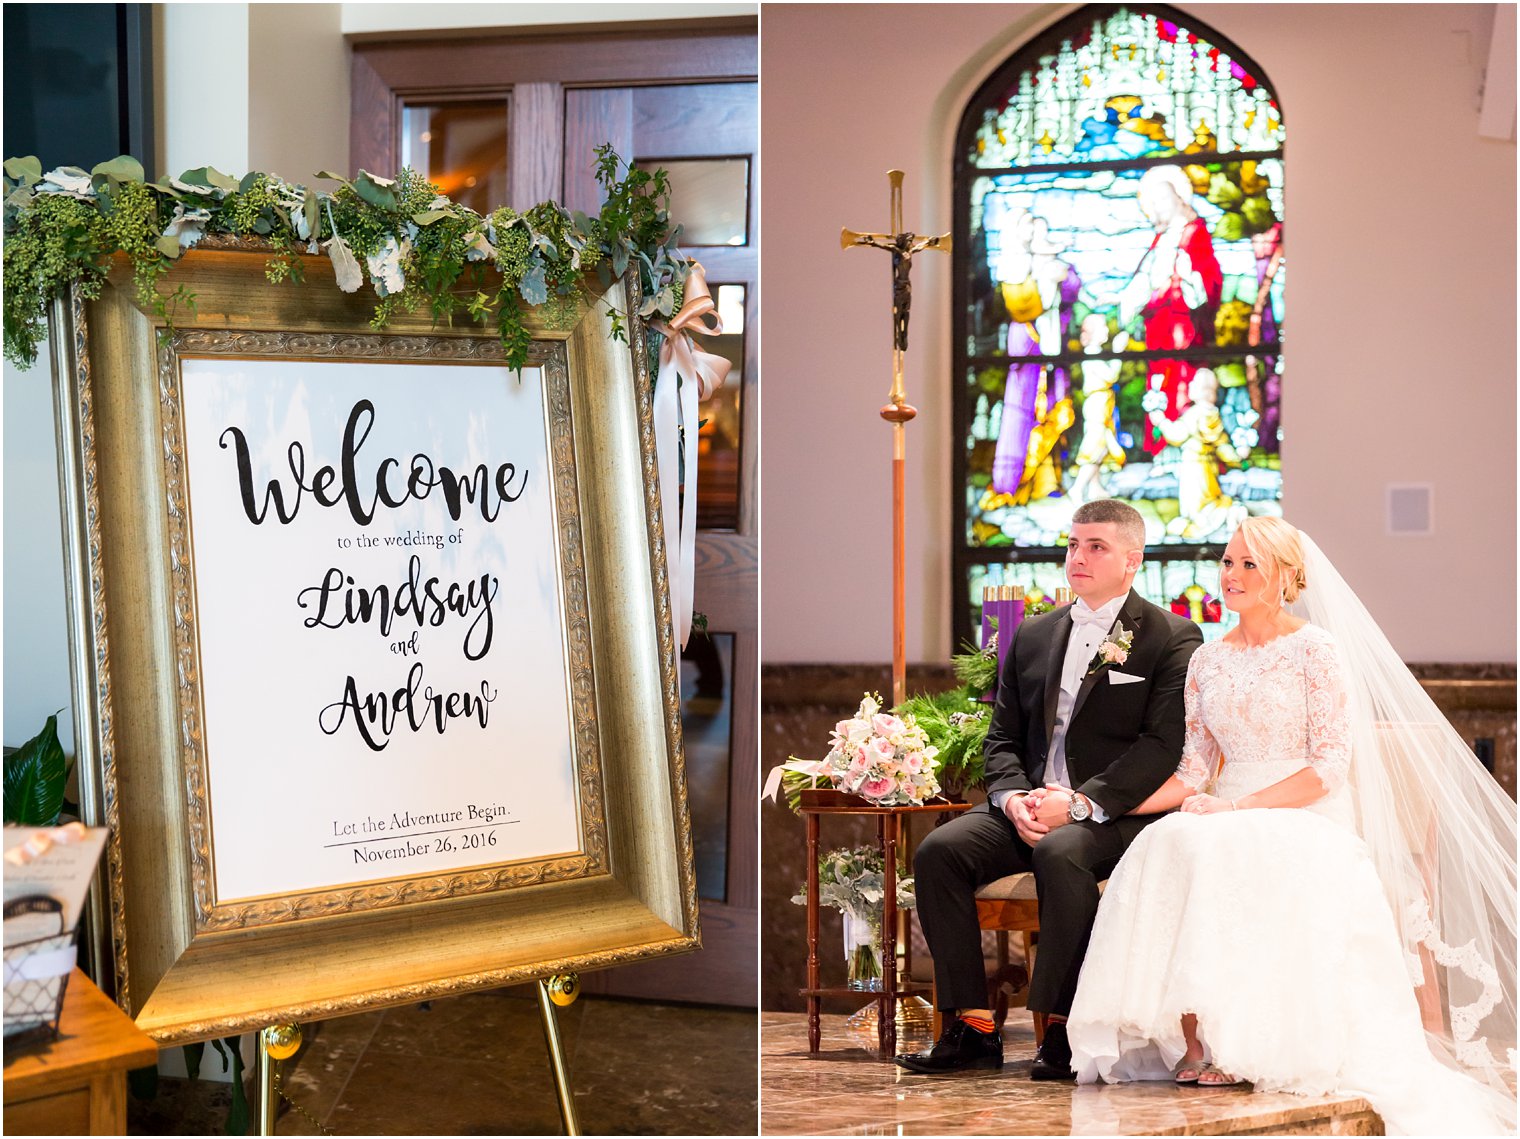 Welcome sign | Wedding signage | Photo by Idalia Photography